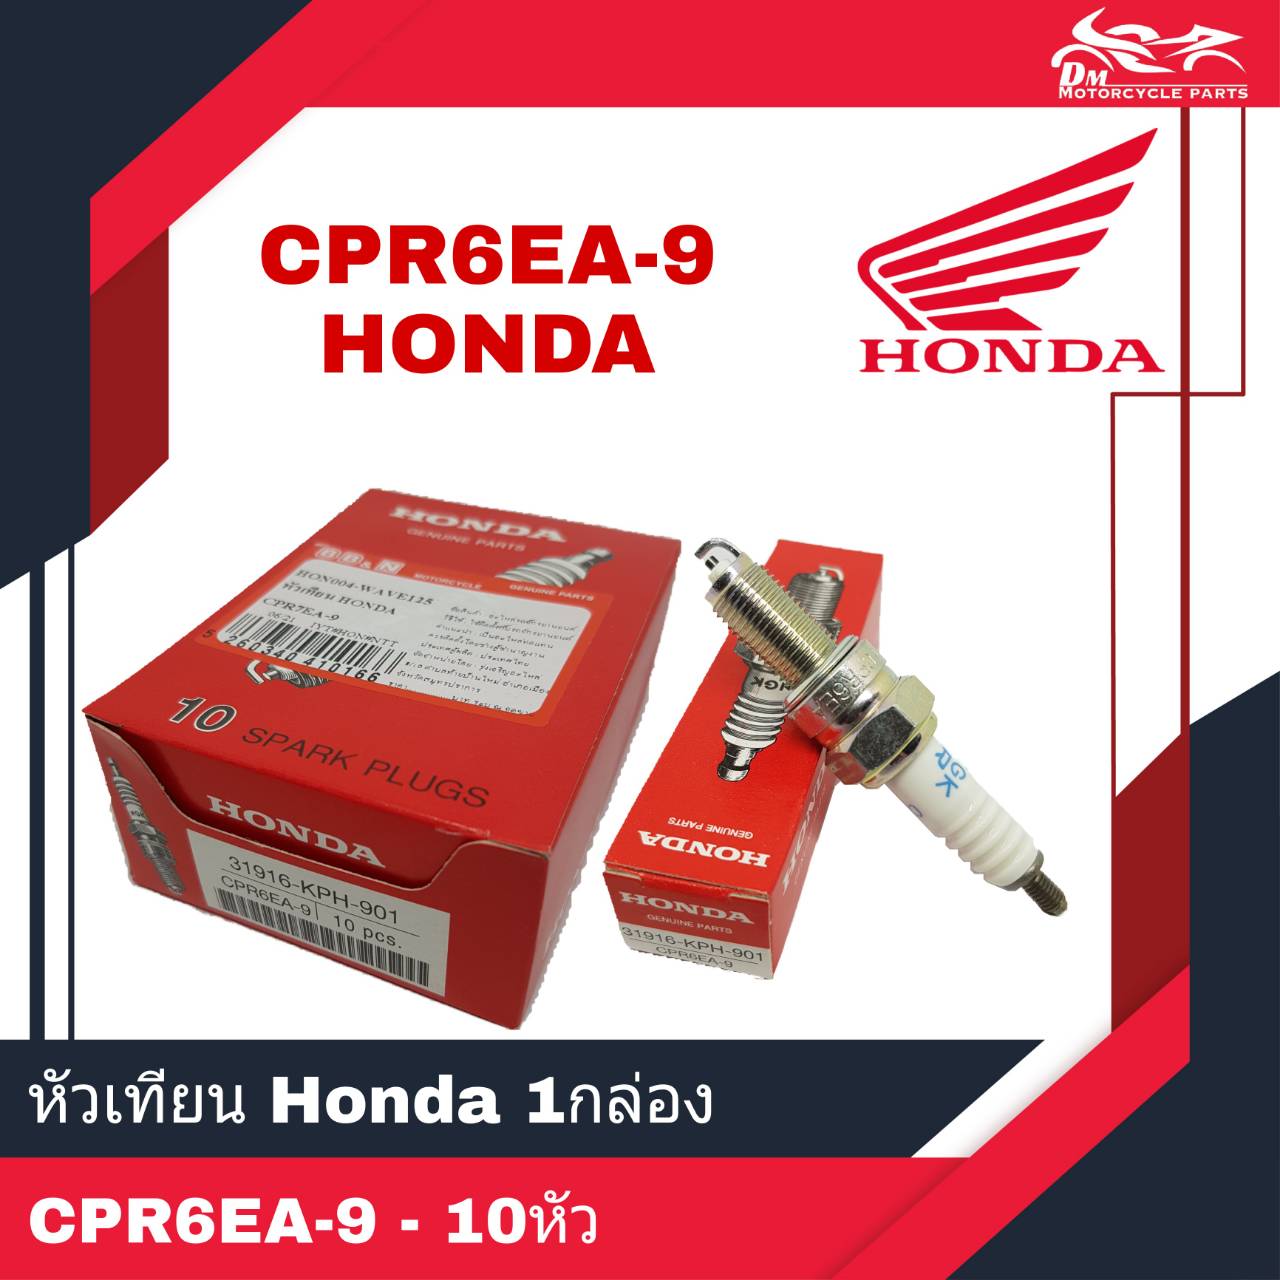 หัวเทียน HONDA แท้ เบอร์ CPR6EA-9 เกียวยาว 1กล่อง - 10หัว